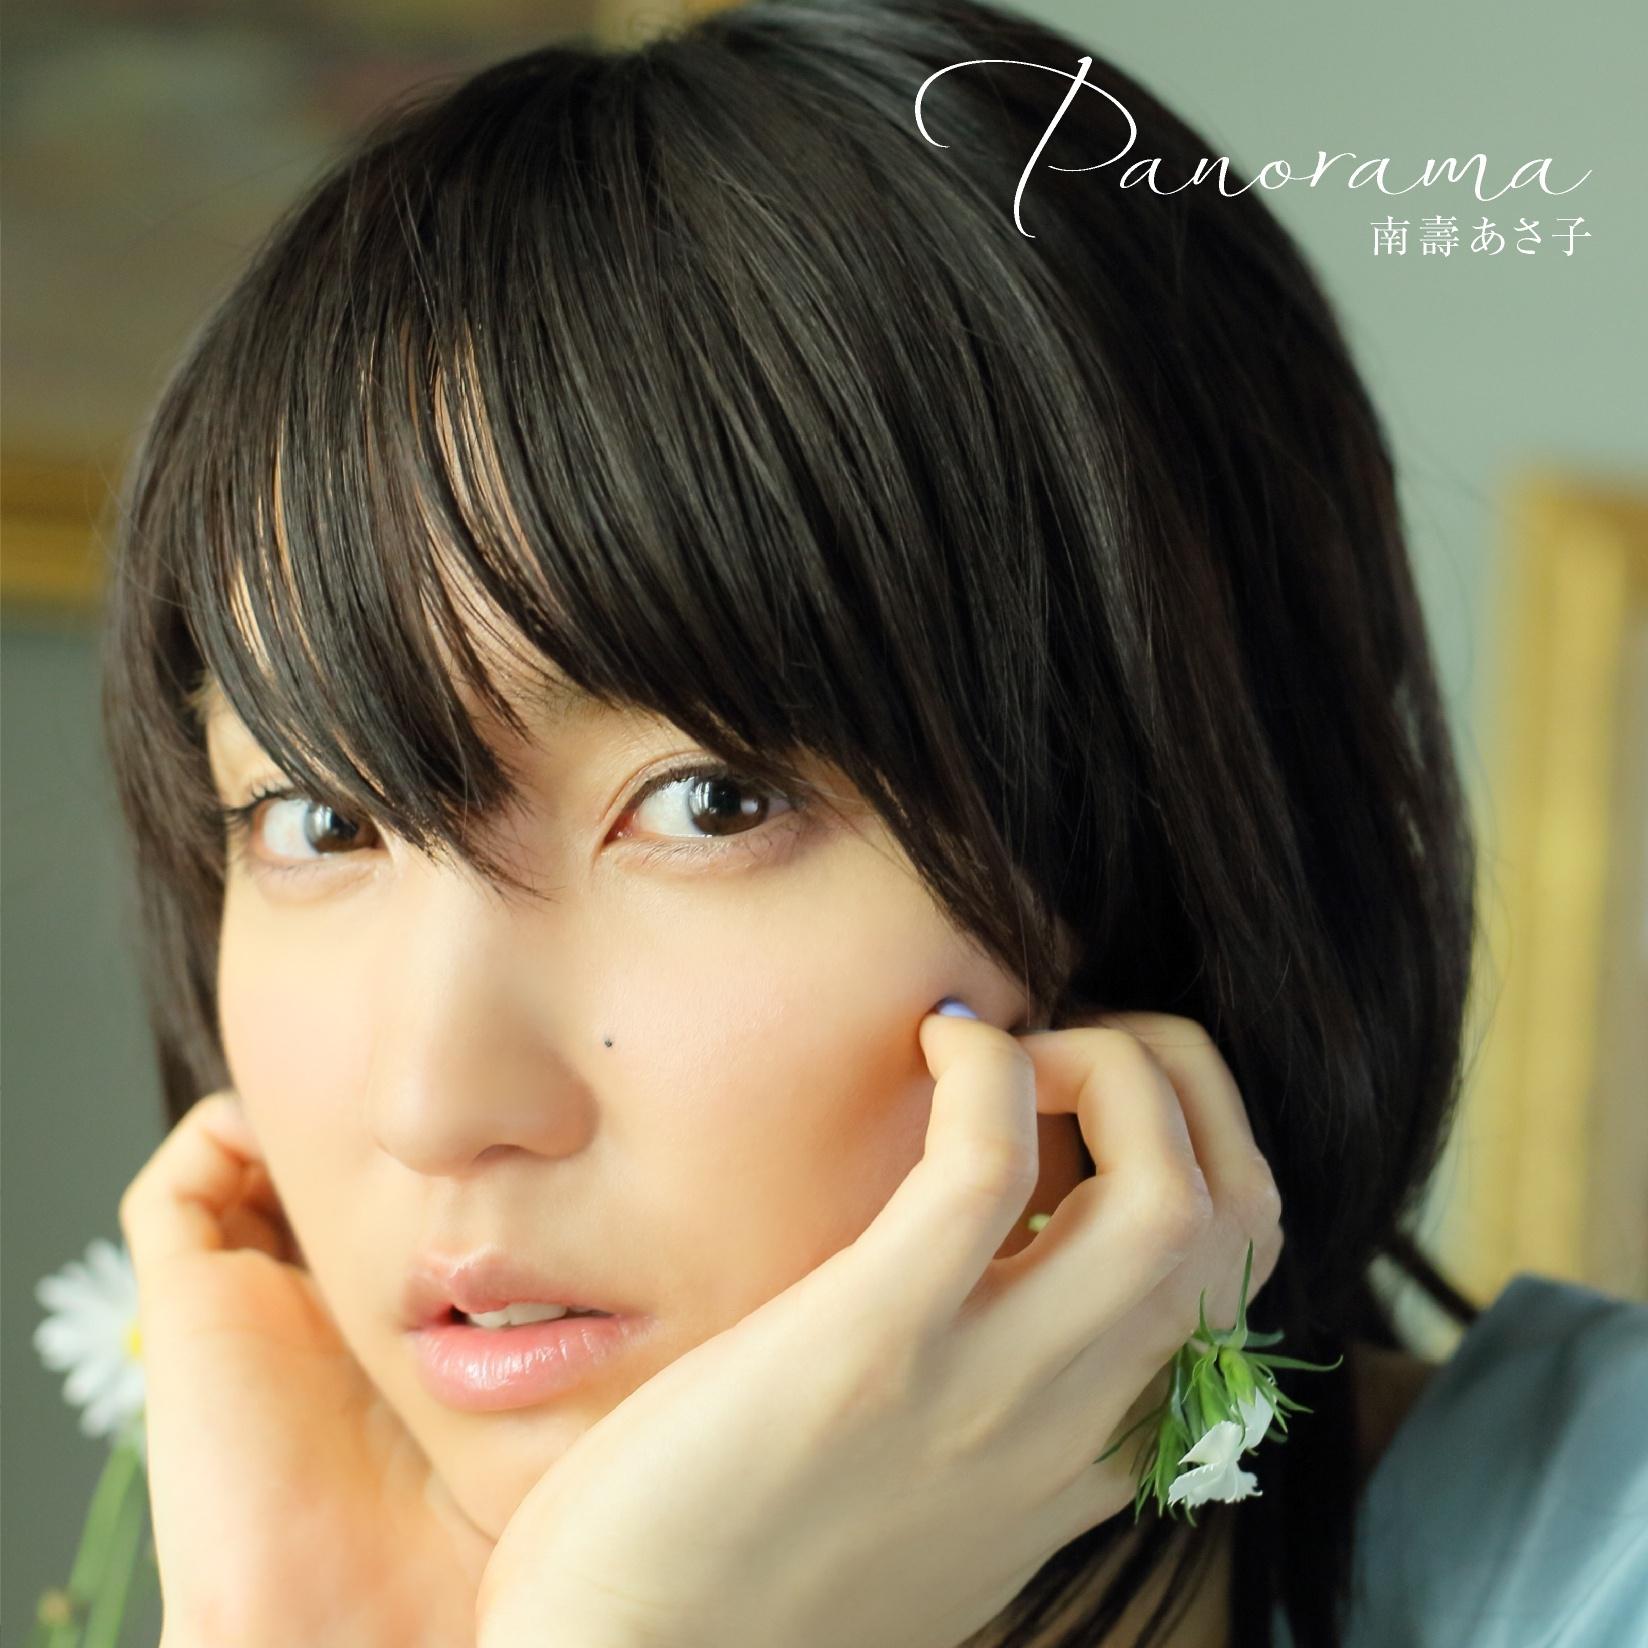 やり過ごされた時間たち歌词 歌手南壽あさ子-专辑Panorama-单曲《やり過ごされた時間たち》LRC歌词下载